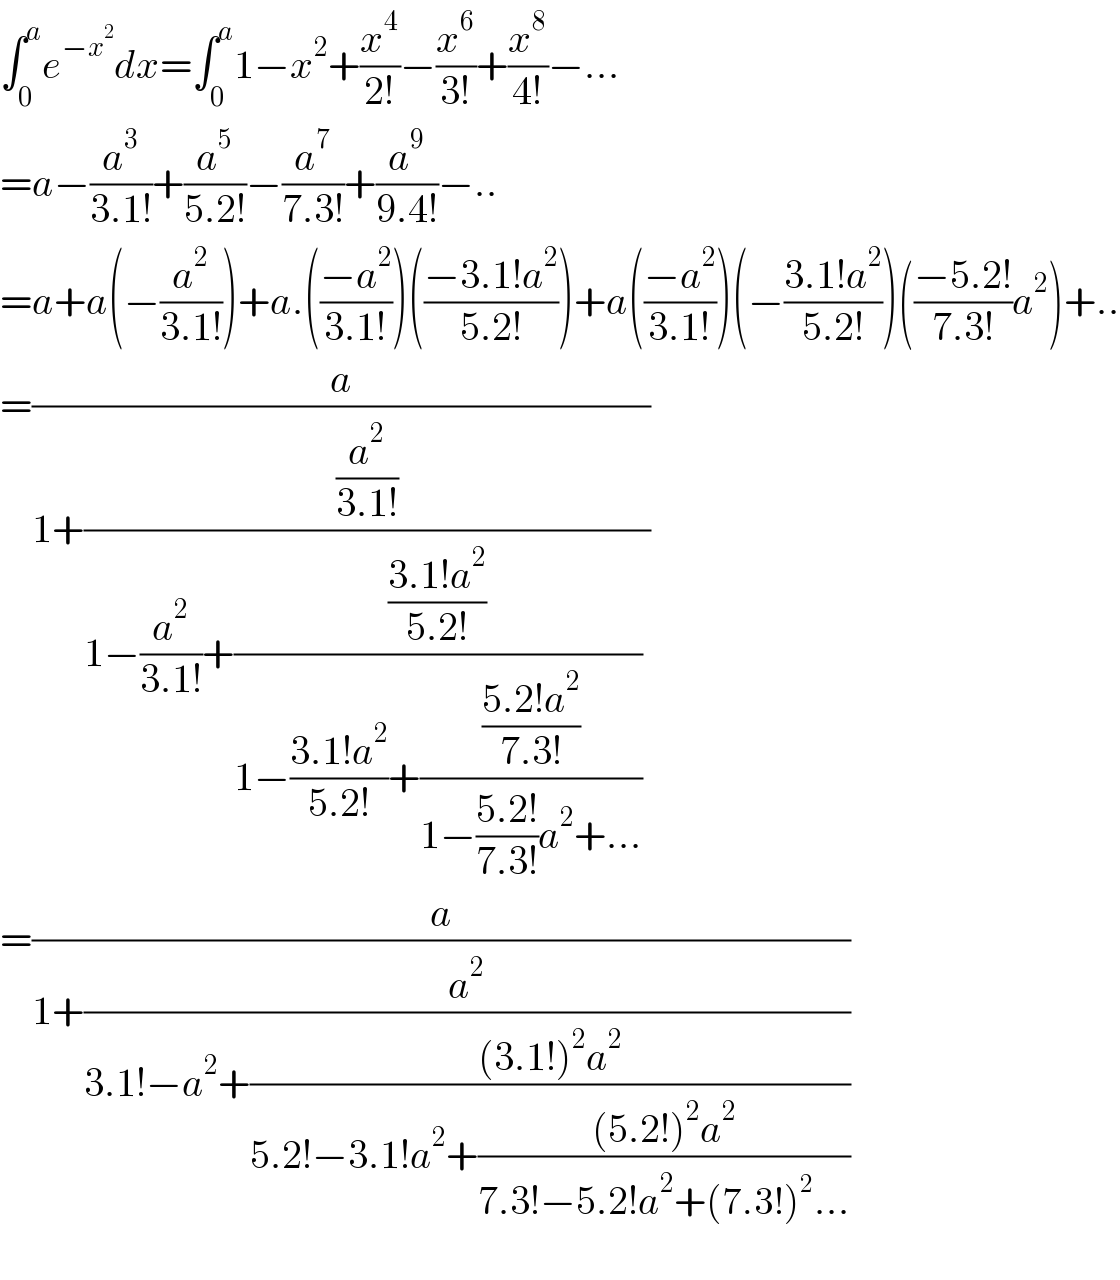 ∫_0 ^a e^(−x^2 ) dx=∫_0 ^a 1−x^2 +(x^4 /(2!))−(x^6 /(3!))+(x^8 /(4!))−...  =a−(a^3 /(3.1!))+(a^5 /(5.2!))−(a^7 /(7.3!))+(a^9 /(9.4!))−..  =a+a(−(a^2 /(3.1!)))+a.(((−a^2 )/(3.1!)))(((−3.1!a^2 )/(5.2!)))+a(((−a^2 )/(3.1!)))(−((3.1!a^2 )/(5.2!)))(((−5.2!)/(7.3!))a^2 )+..  =(a/(1+((a^2 /(3.1!))/(1−(a^2 /(3.1!))+(((3.1!a^2 )/(5.2!))/(1−((3.1!a^2 )/(5.2!))+(((5.2!a^2 )/(7.3!))/(1−((5.2!)/(7.3!))a^2 +...)))) ))))  =(a/(1+(a^2 /(3.1!−a^2 +(((3.1!)^2 a^2 )/(5.2!−3.1!a^2 +(((5.2!)^2 a^2 )/(7.3!−5.2!a^2 +(7.3!)^2 ...))))))))    